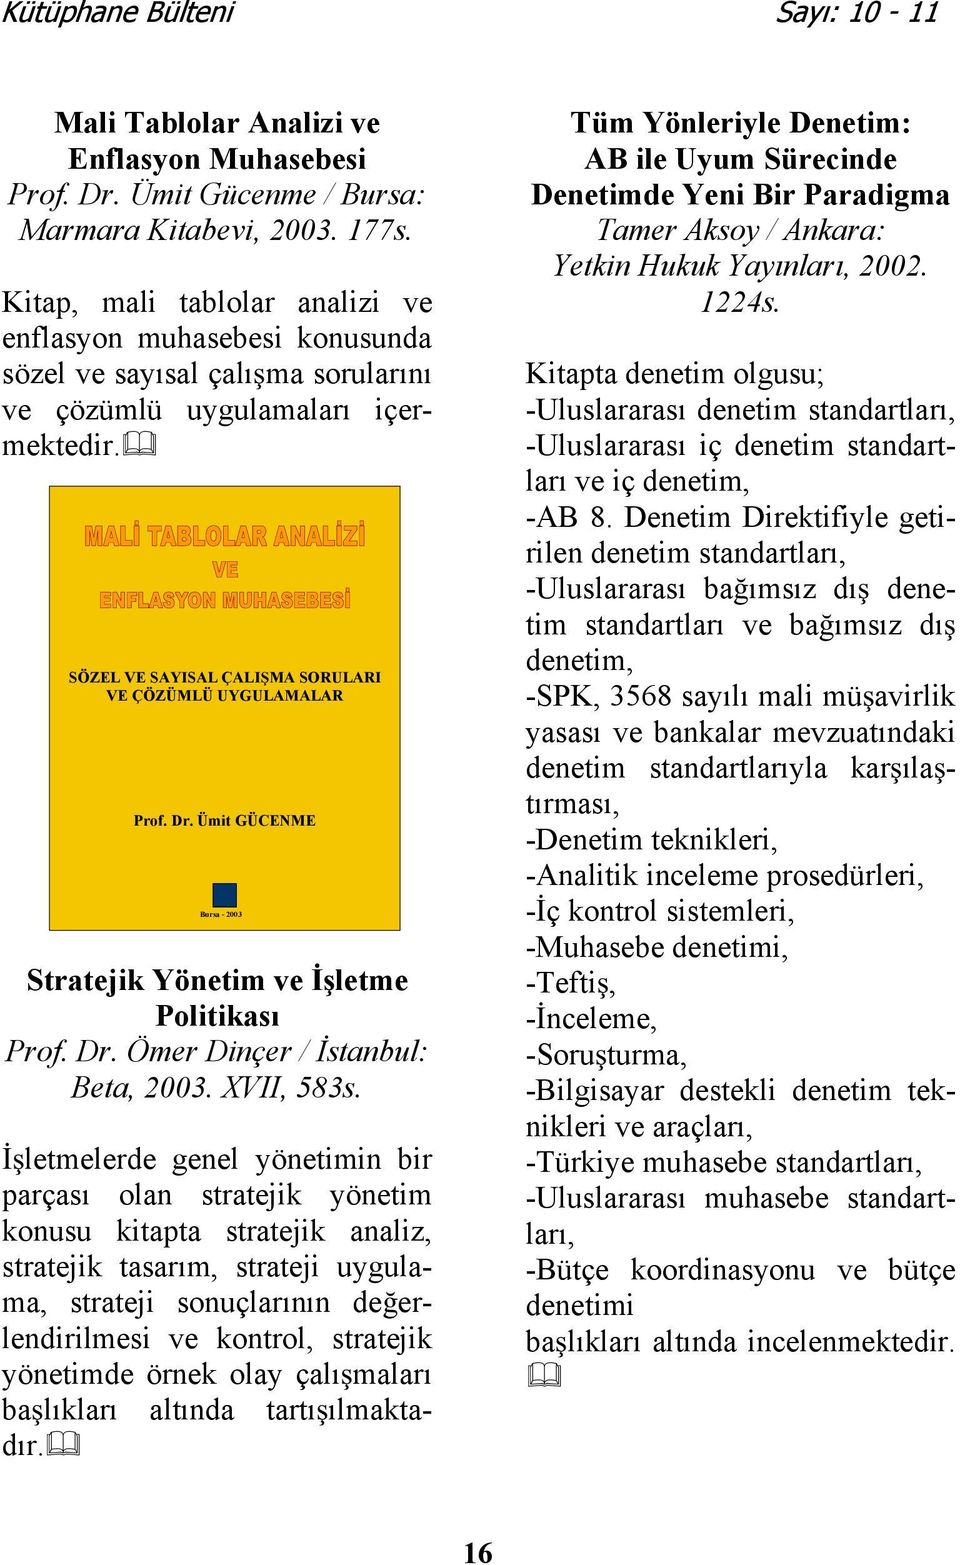 Dr. Ümit GÜCENME Bursa - 2003 Stratejik Yönetim ve letme Politikası Prof. Dr. Ömer Dinçer / stanbul: Beta, 2003. XVII, 583s.